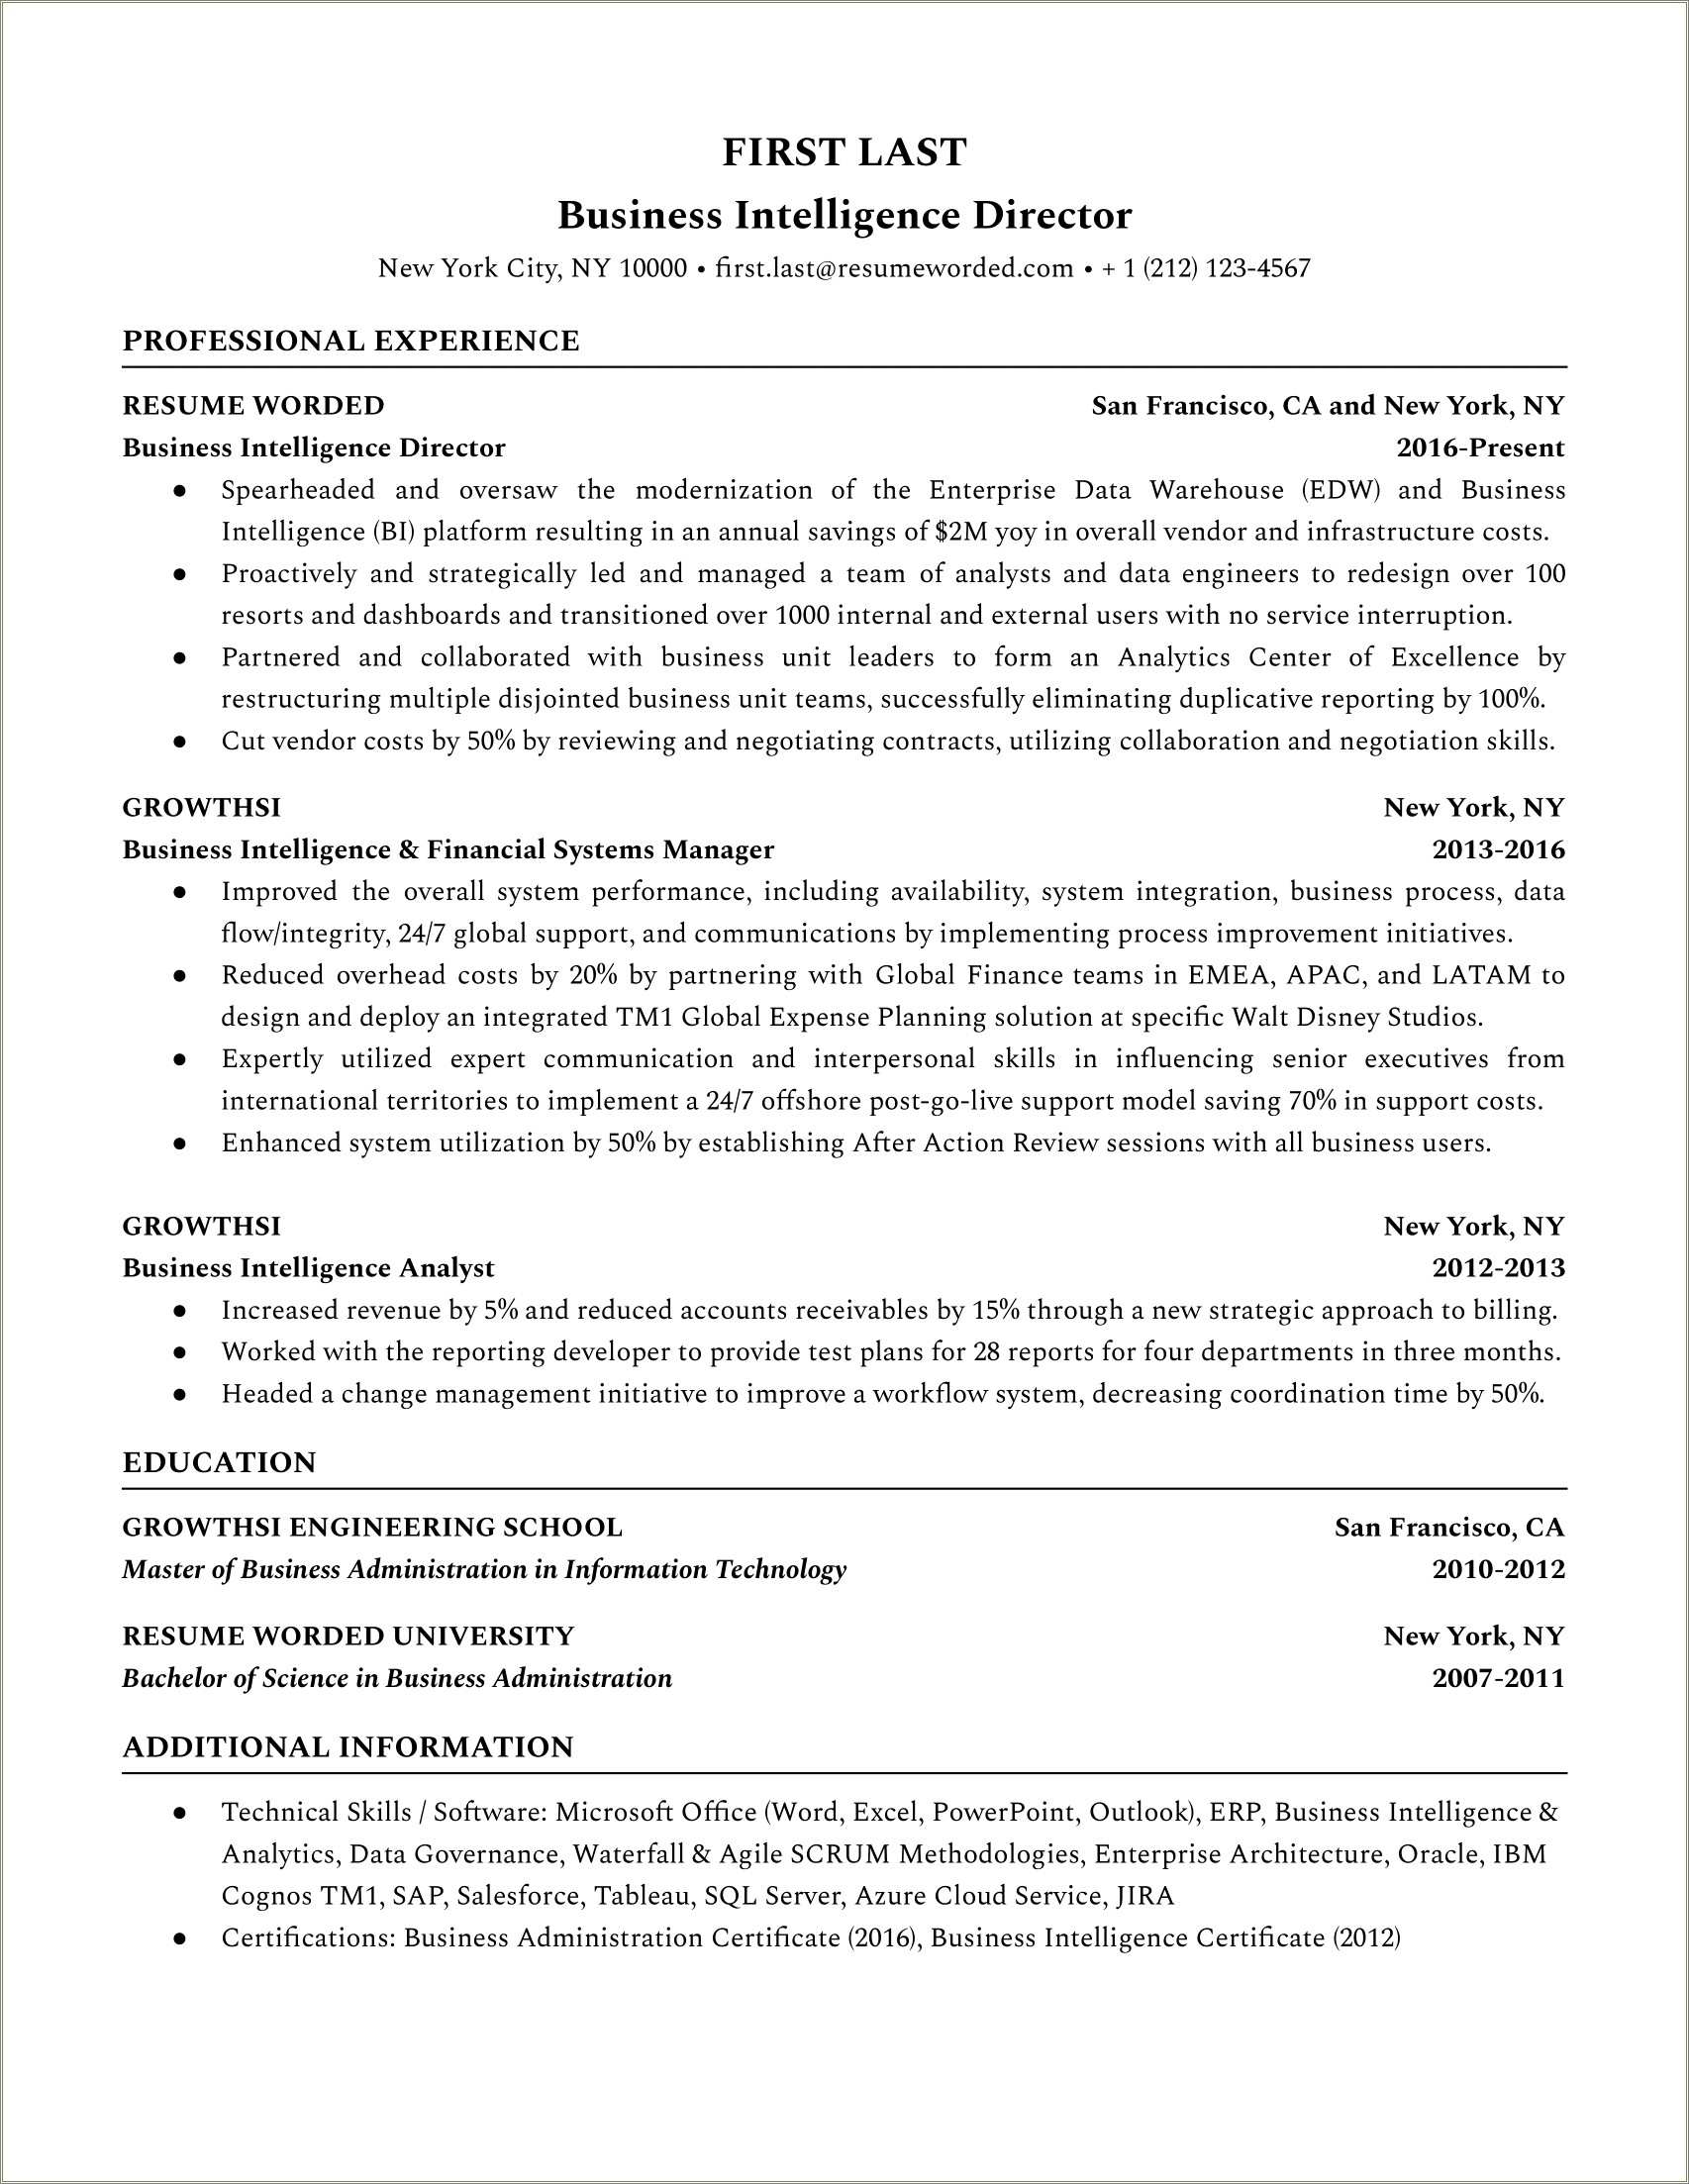 Resume Profile Summary Of Intelligence Analyst